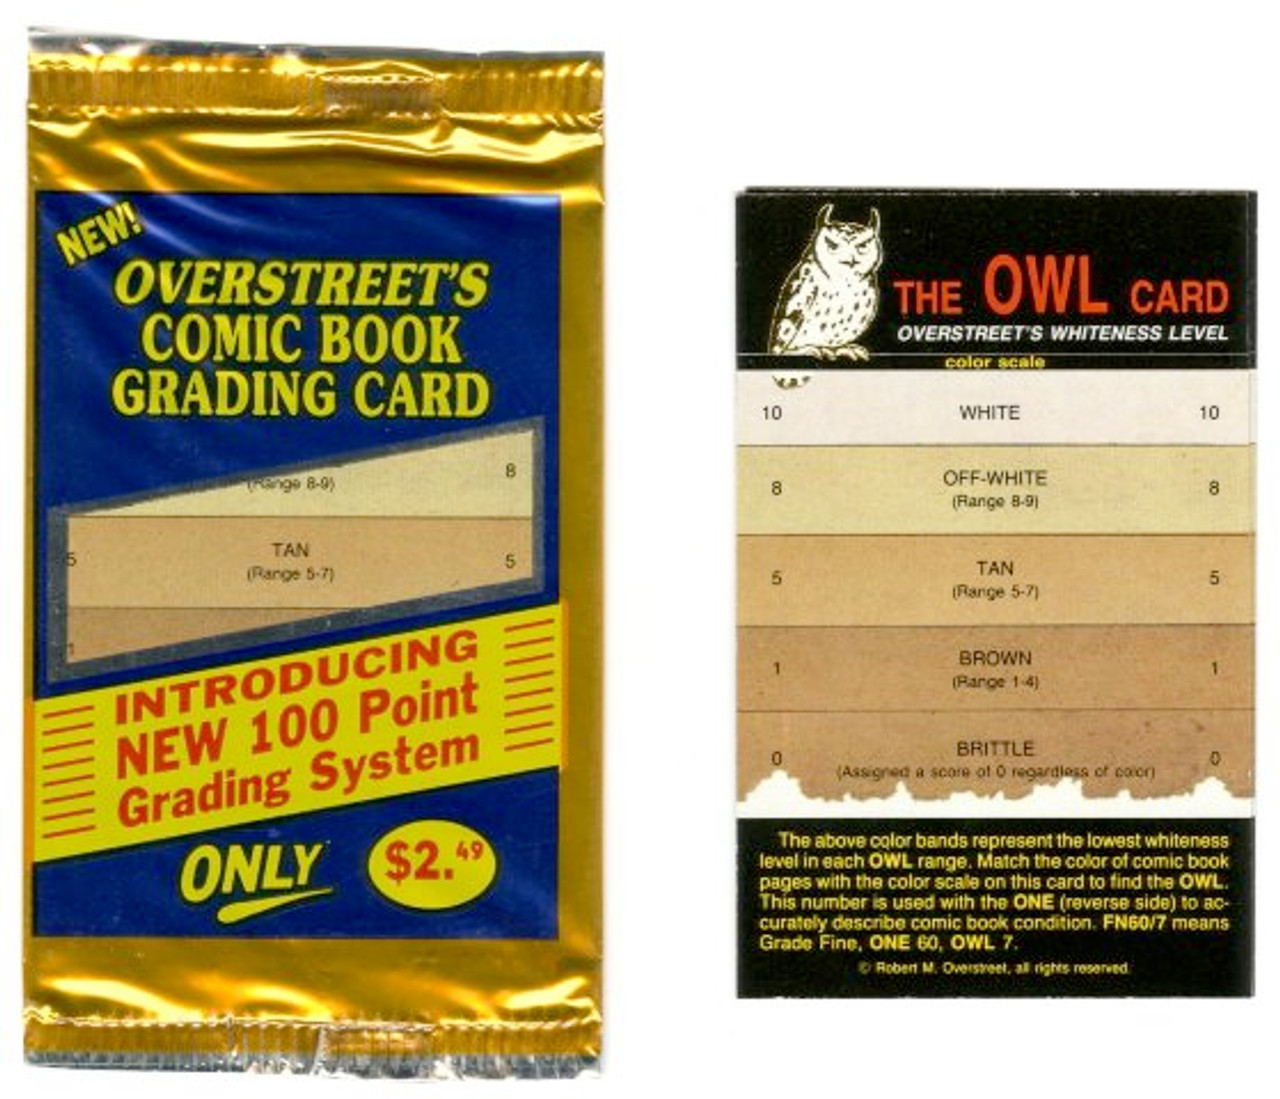 OWL Card - Gemstone Publishing